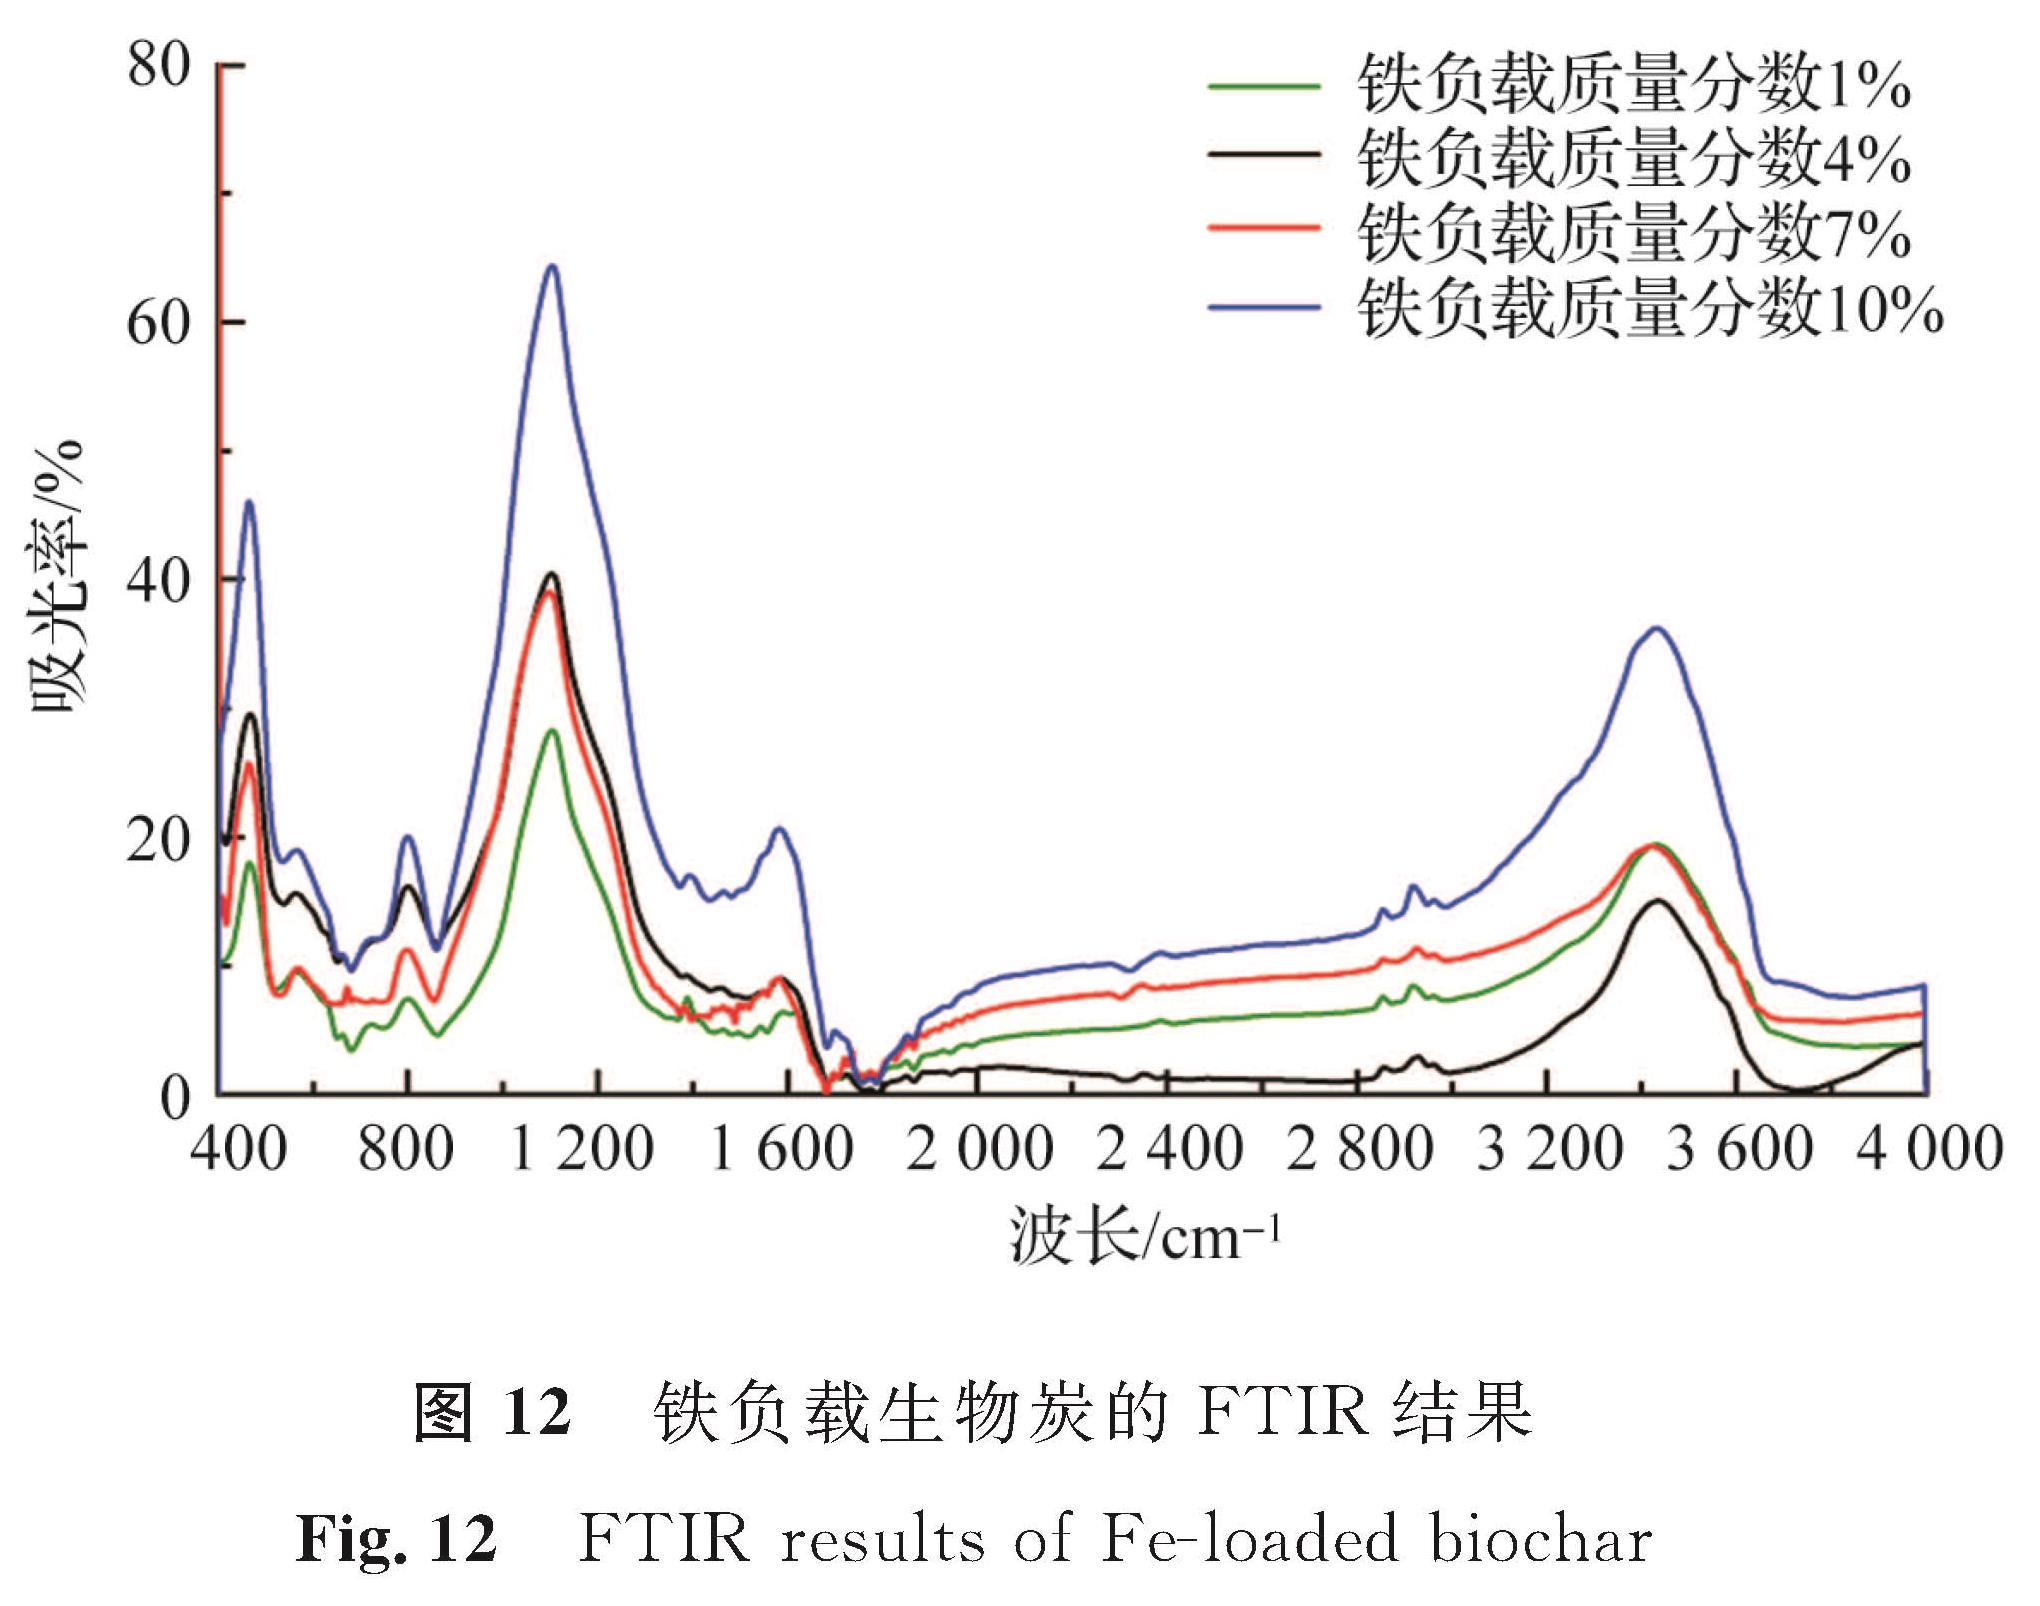 图 12 铁负载生物炭的FTIR结果<br/>Fig.12 FTIR results of Fe-loaded biochar